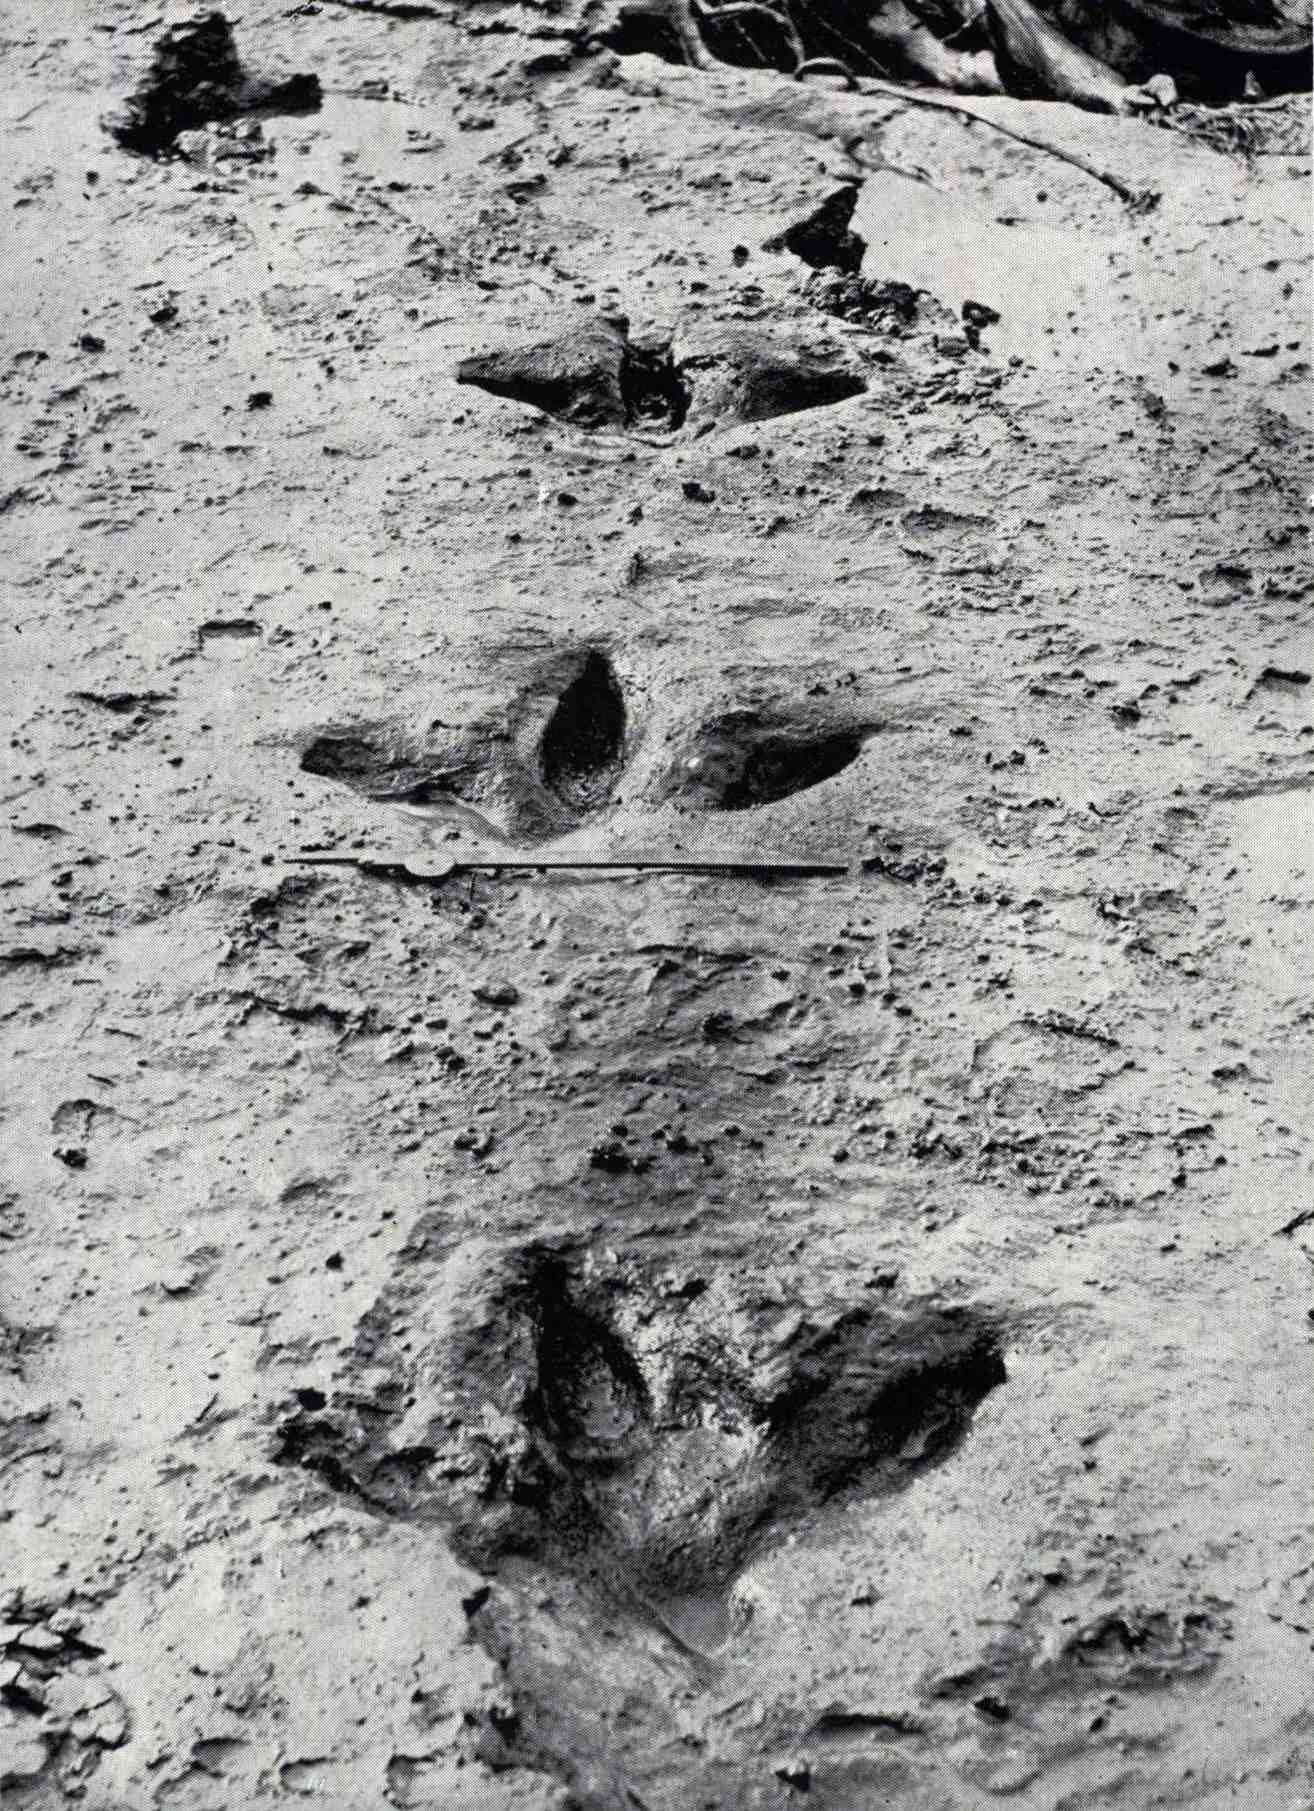 Deze voetafdrukken van Dinornis robustus werden in augustus 1911 blootgelegd toen een overstroming in de Manawatū-rivier de blauwe klei wegvaagde die ze had bedekt en bewaard. Ze laten zien dat de moa drie sterke naar voren gerichte tenen had en, in tegenstelling tot de meeste andere loopvogels, een kleine achterste teen.